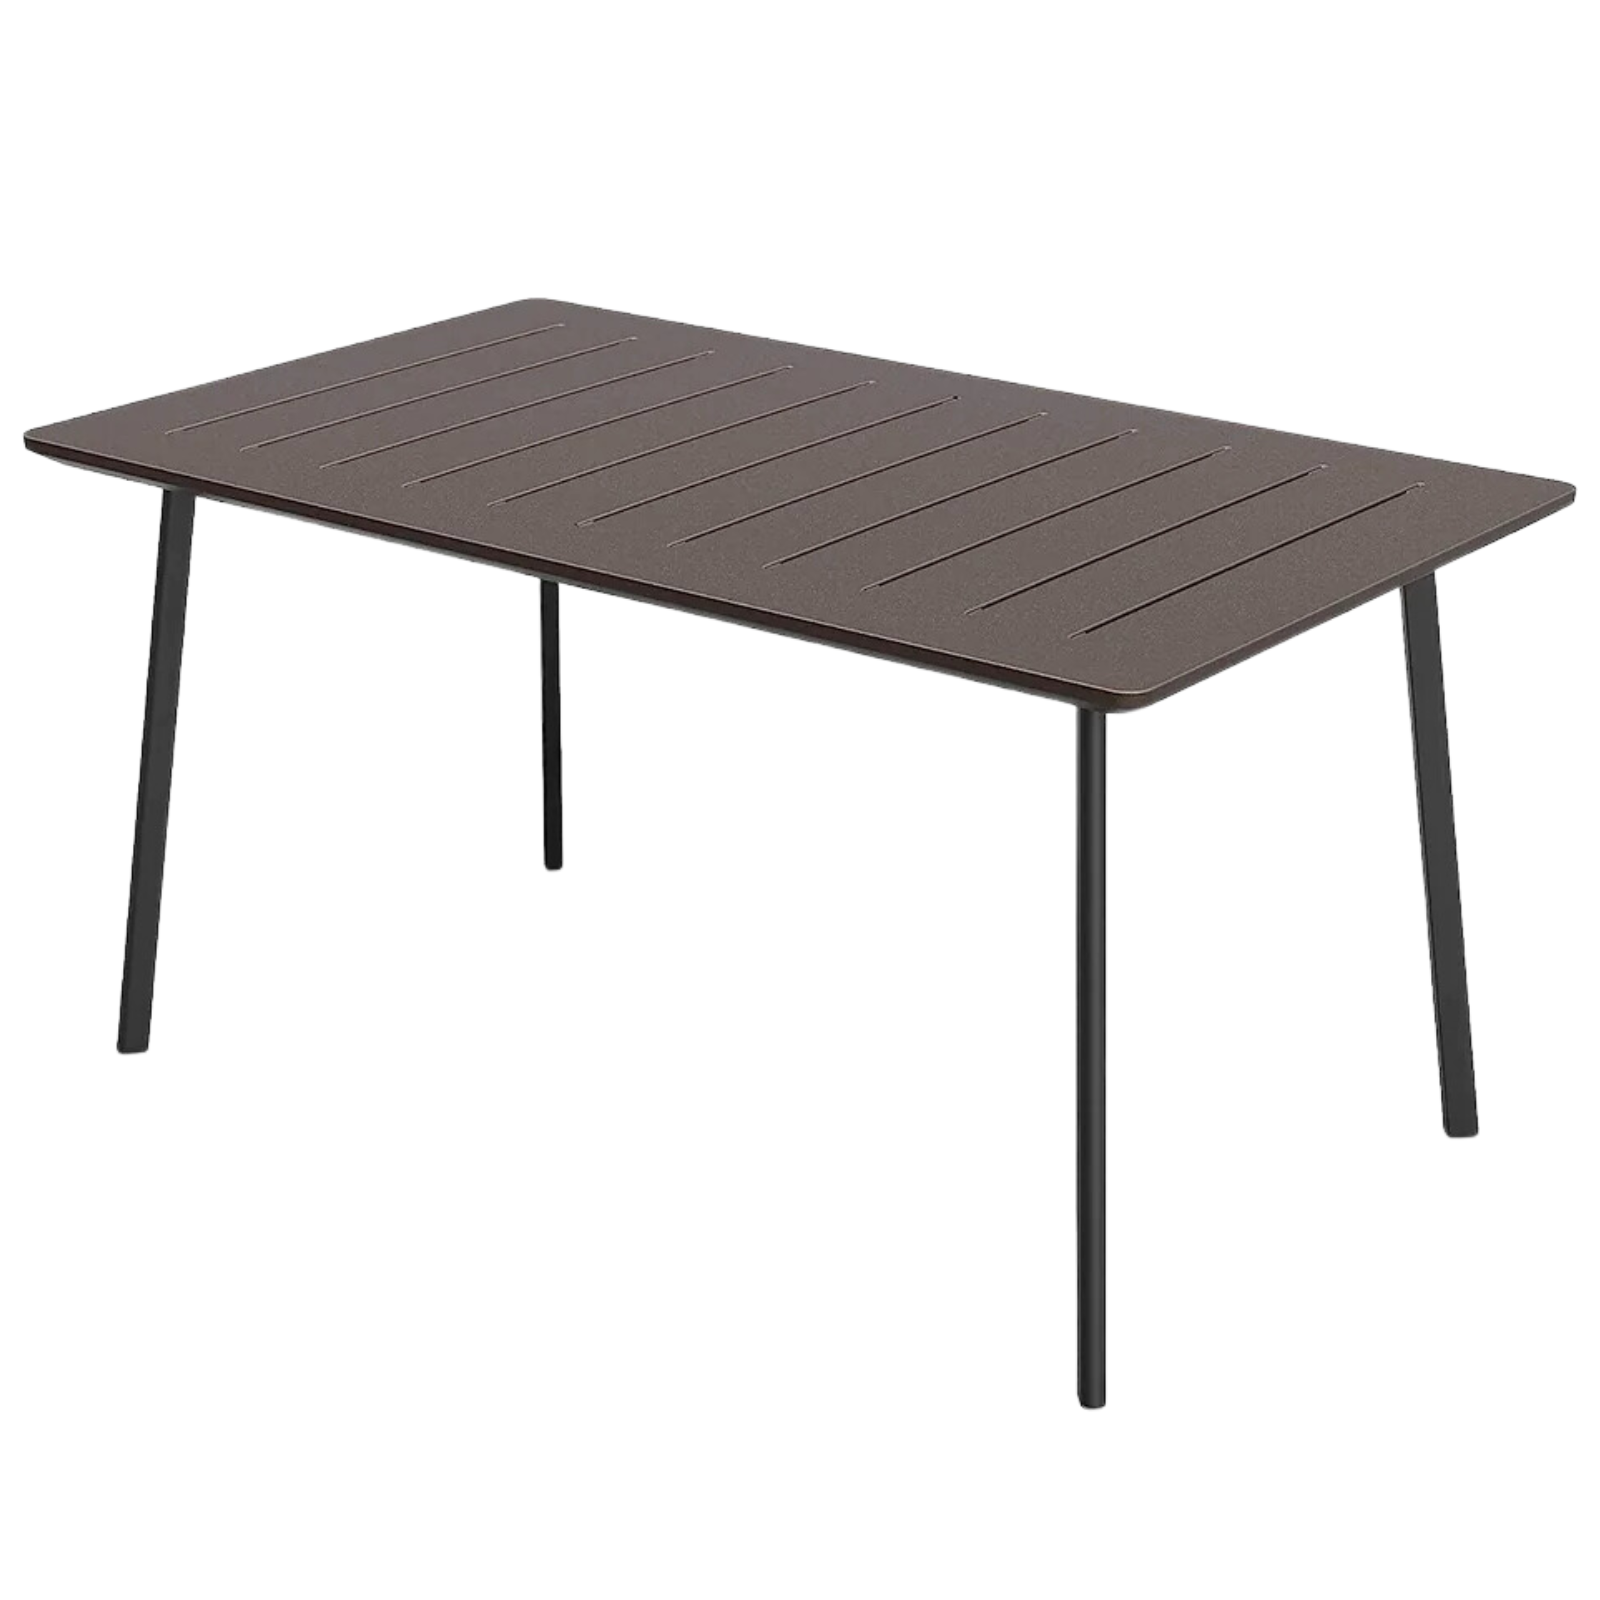 Tavolo rettangolare "Iron" in resina antiurto con piano a doghe design moderno per esterno o interno